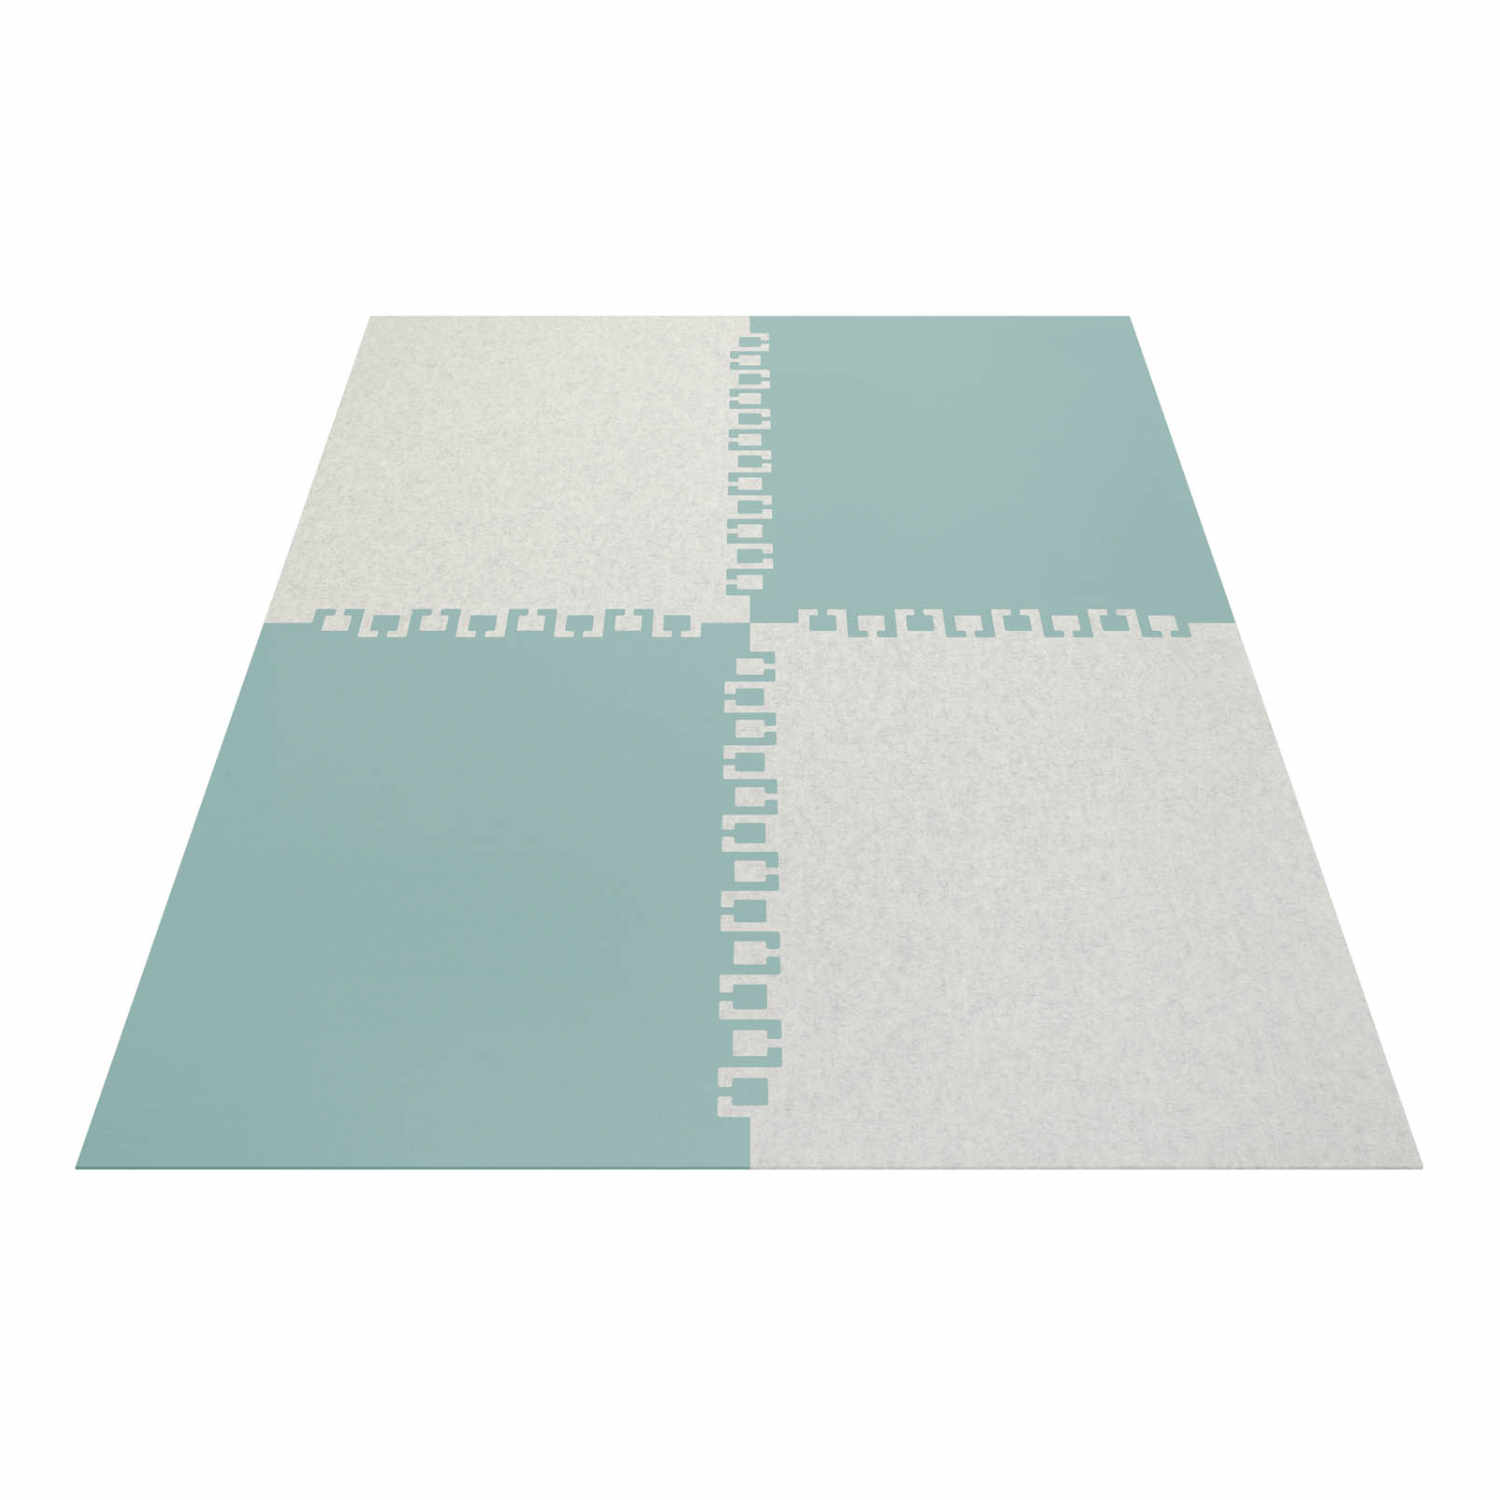 Twice rechteckig 4-teilig Teppich, Farbe schwarz, Farbe 2 marmor 06, Grösse 140 x 200 cm von HEY-SIGN